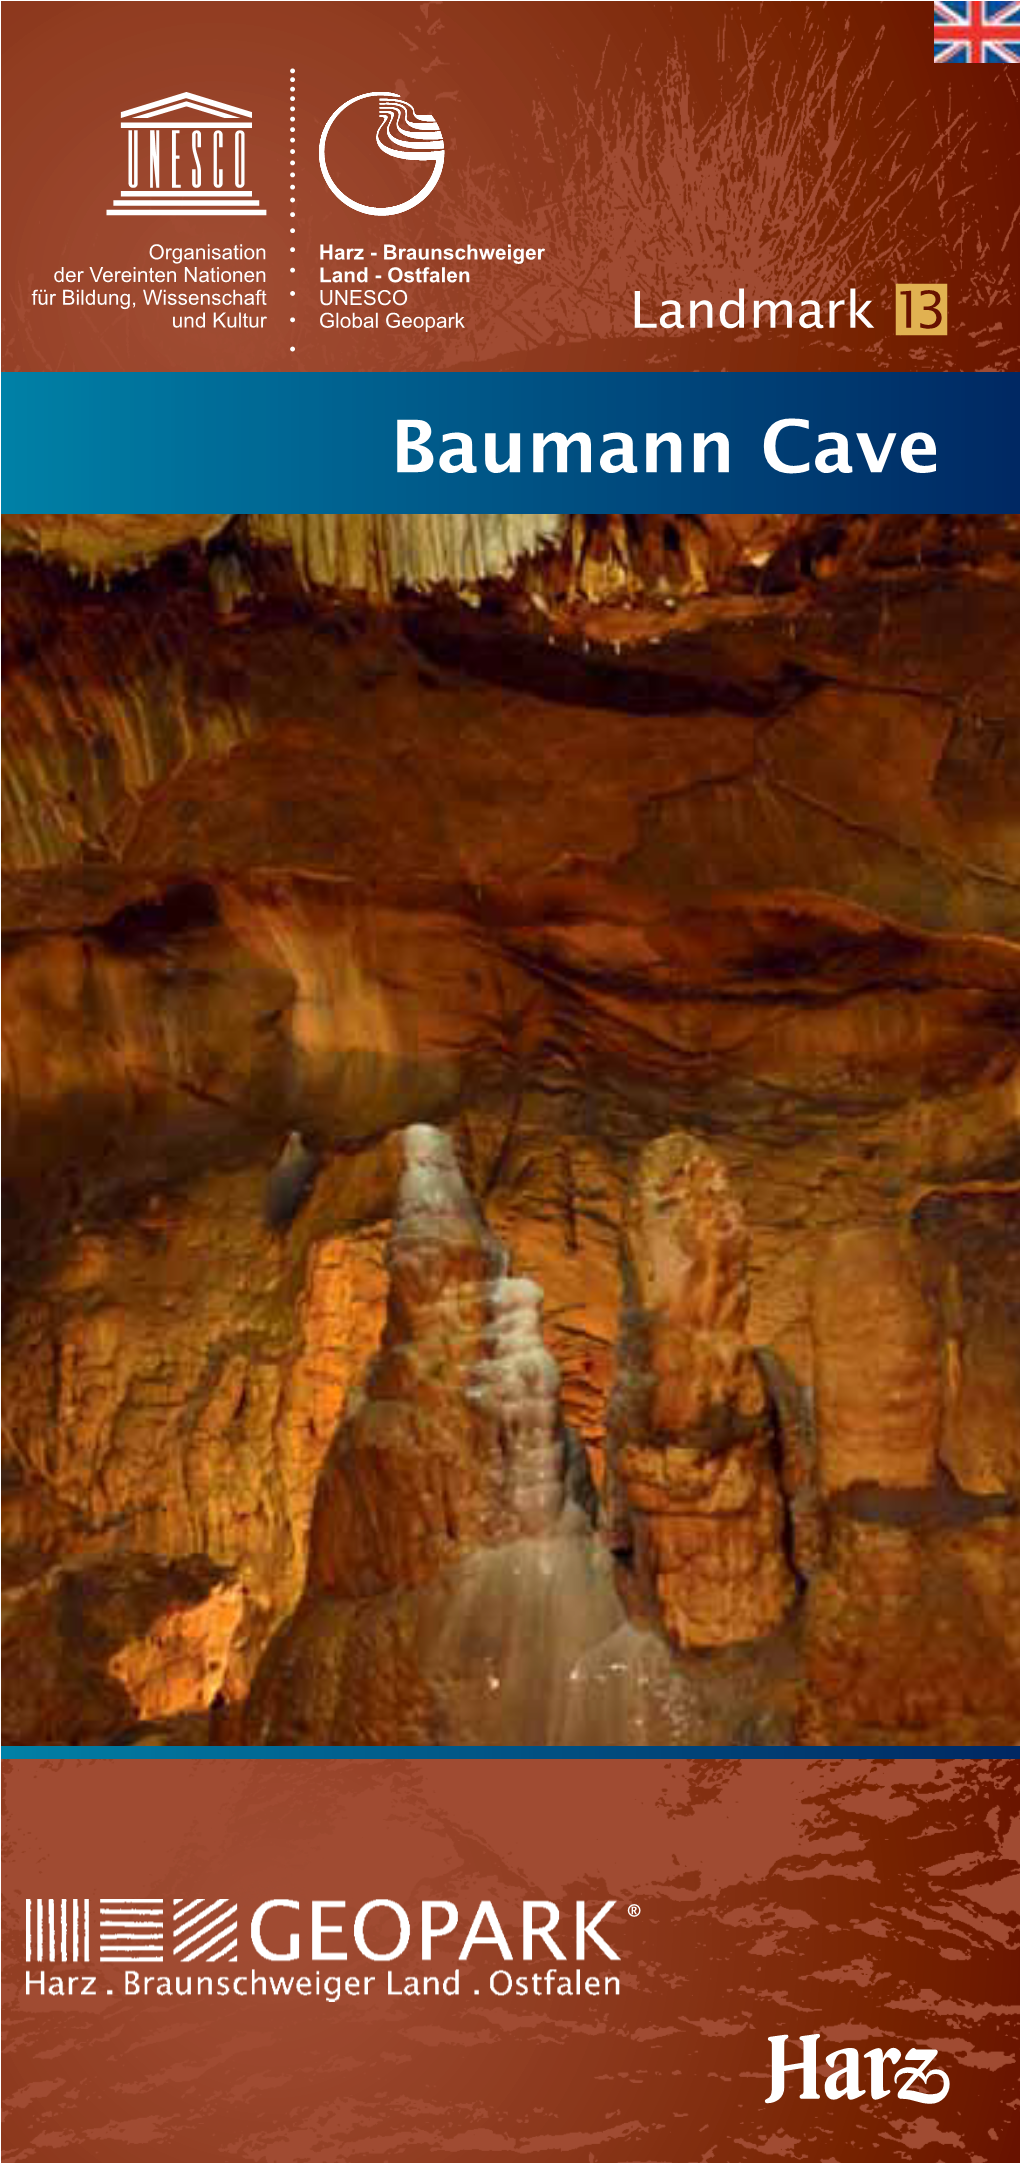 Baumann Cave